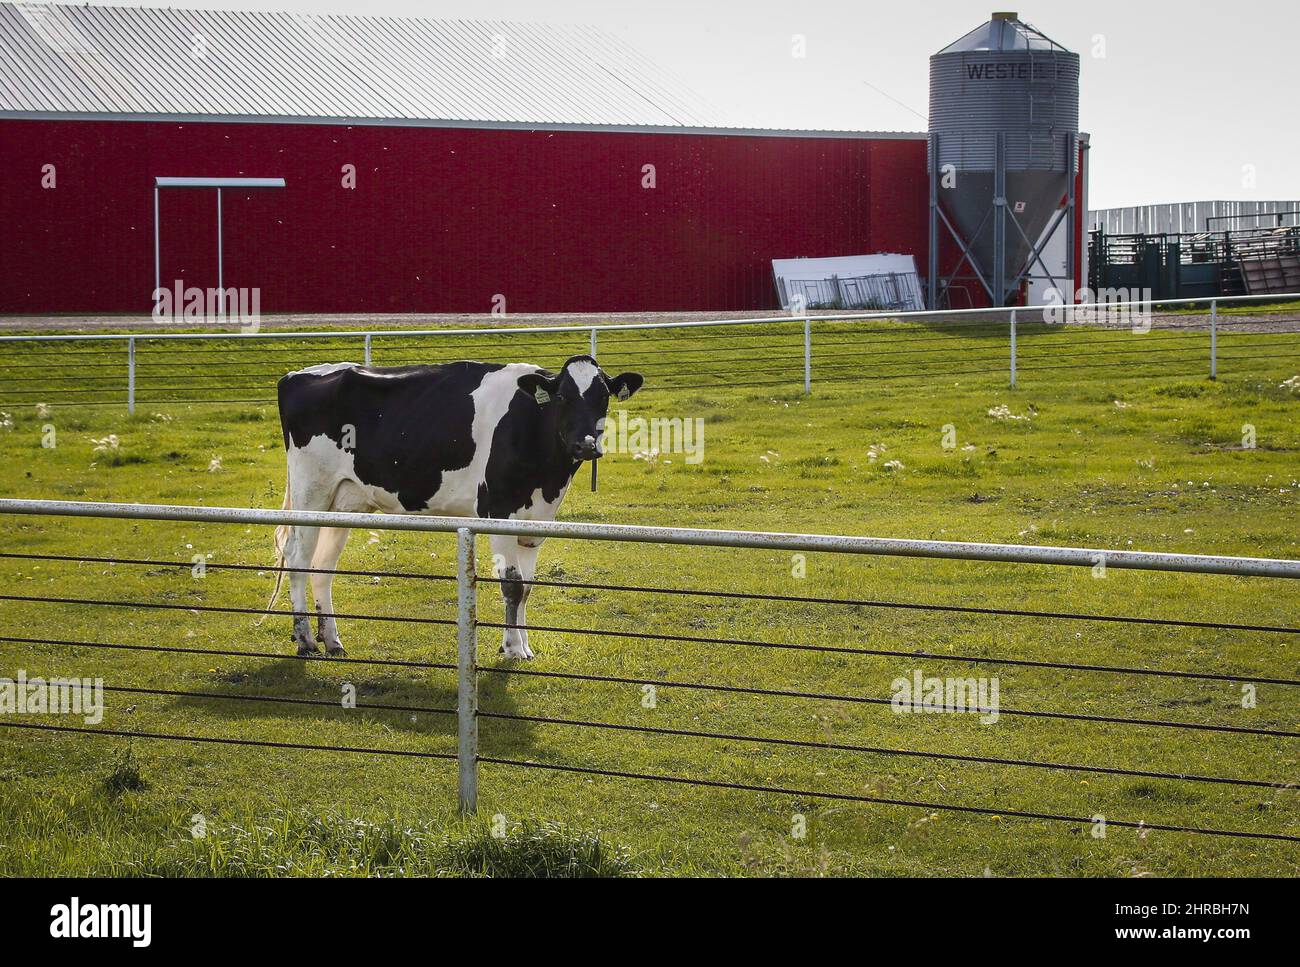 Un grupo de expertos de libre mercado sugiere ofrecer a los negociadores estadounidenses en las próximas conversaciones del TLCAN un comercio más abierto de productos lácteos, a cambio de un comercio más predecible de madera blanda para asegurar la paz a largo plazo en ese expediente perennialmente problemático. Una vaca Holstein está parada en un pasto en una granja lechera cerca de Calgary en una foto del archivo del 31 de agosto de 2016. LA PRENSA CANADIENSE/Jeff McIntosh Foto de stock